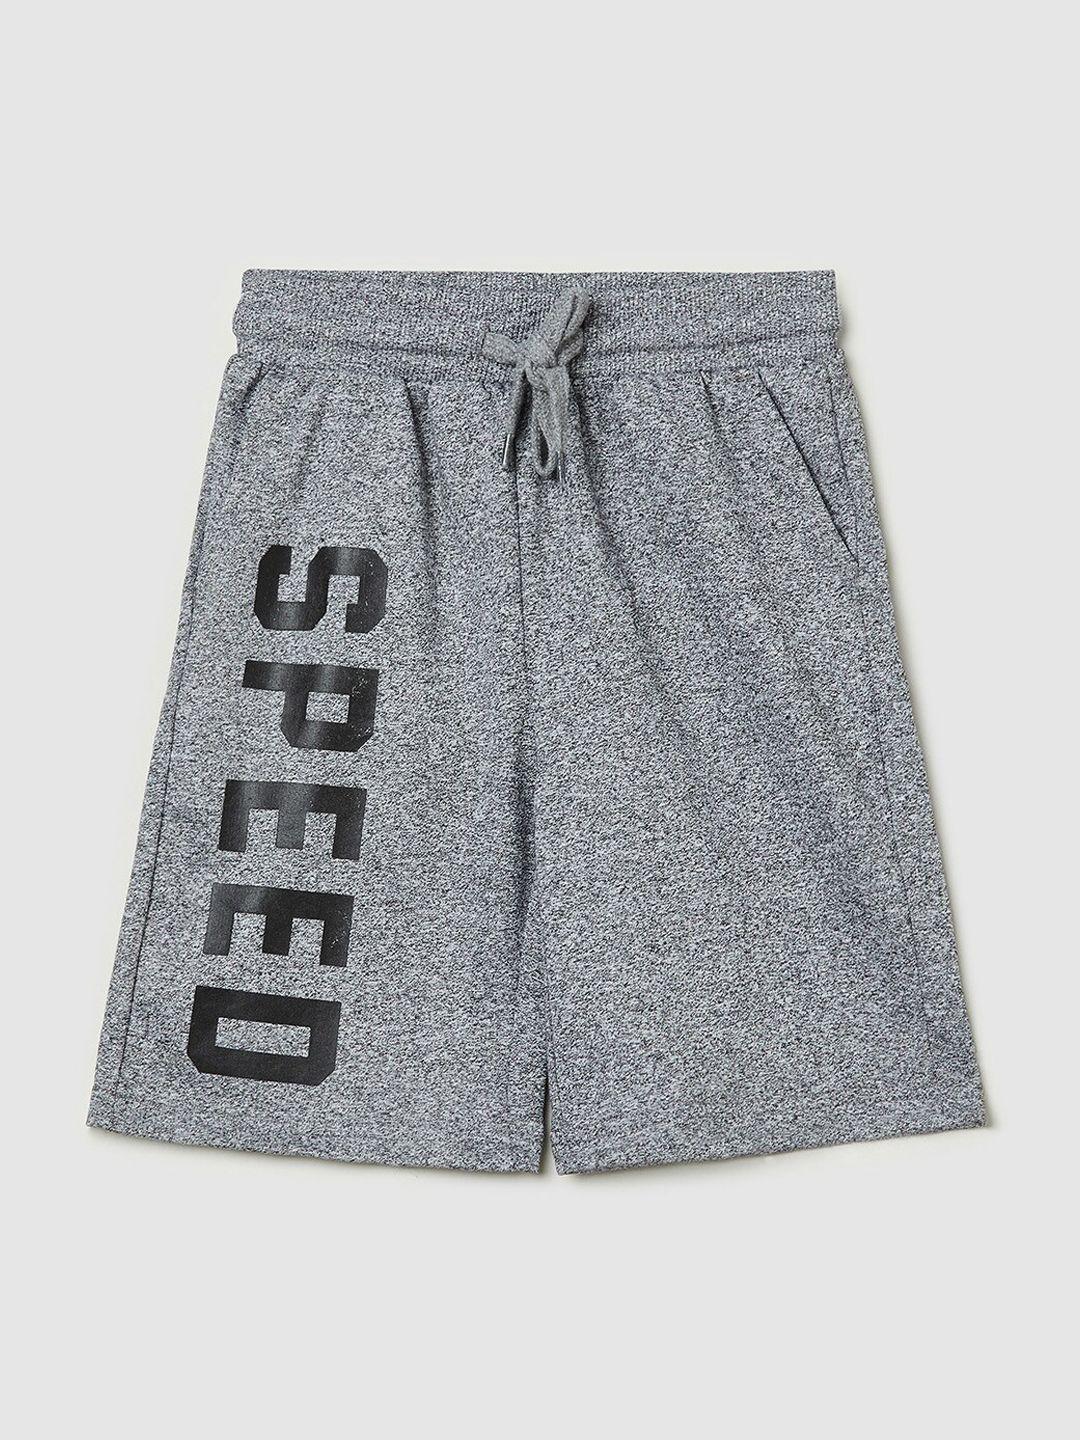 max boys charcoal printed shorts